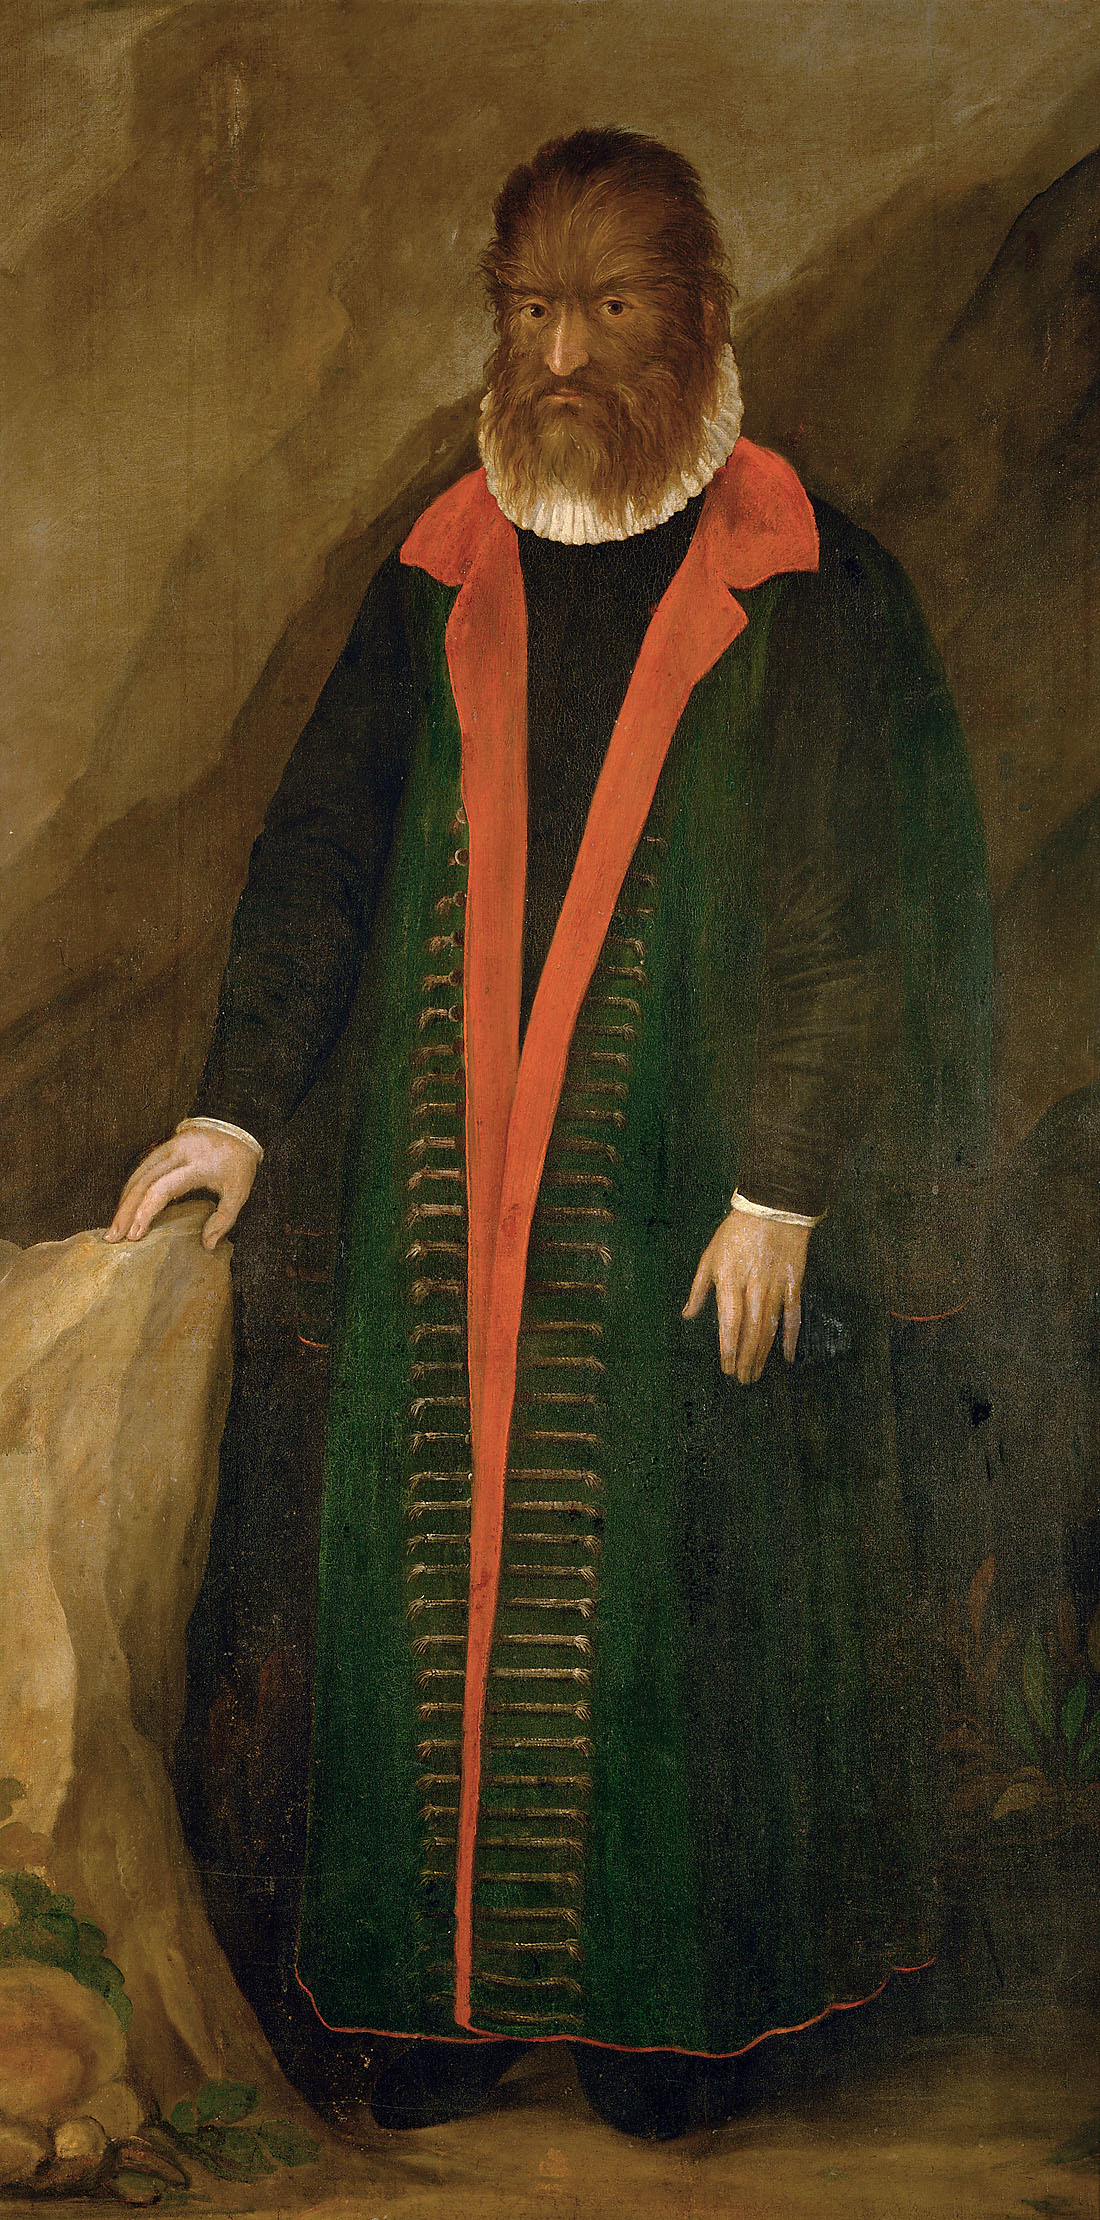 多毛症男人──佩德羅.岡札勒茲 (Petrus Gonsalvus) by Unknown Artist - 1580年 